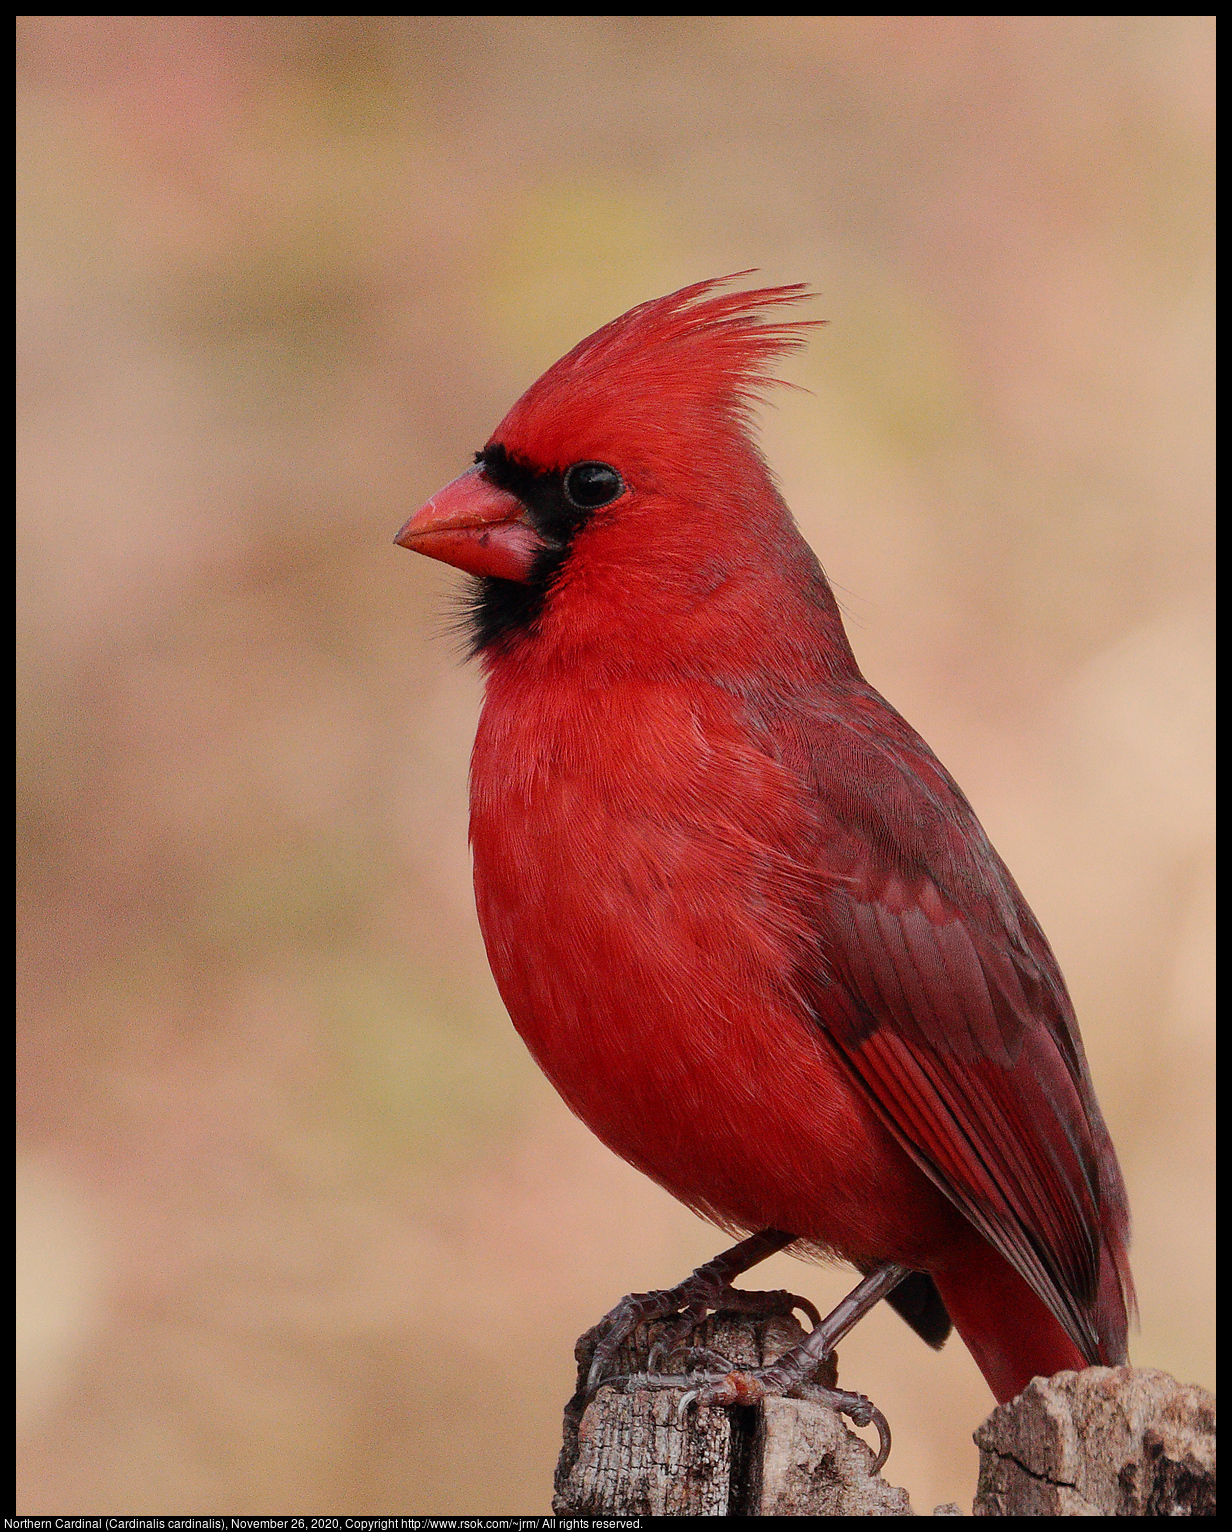 Northern Cardinal (Cardinalis cardinalis), November 26, 2020